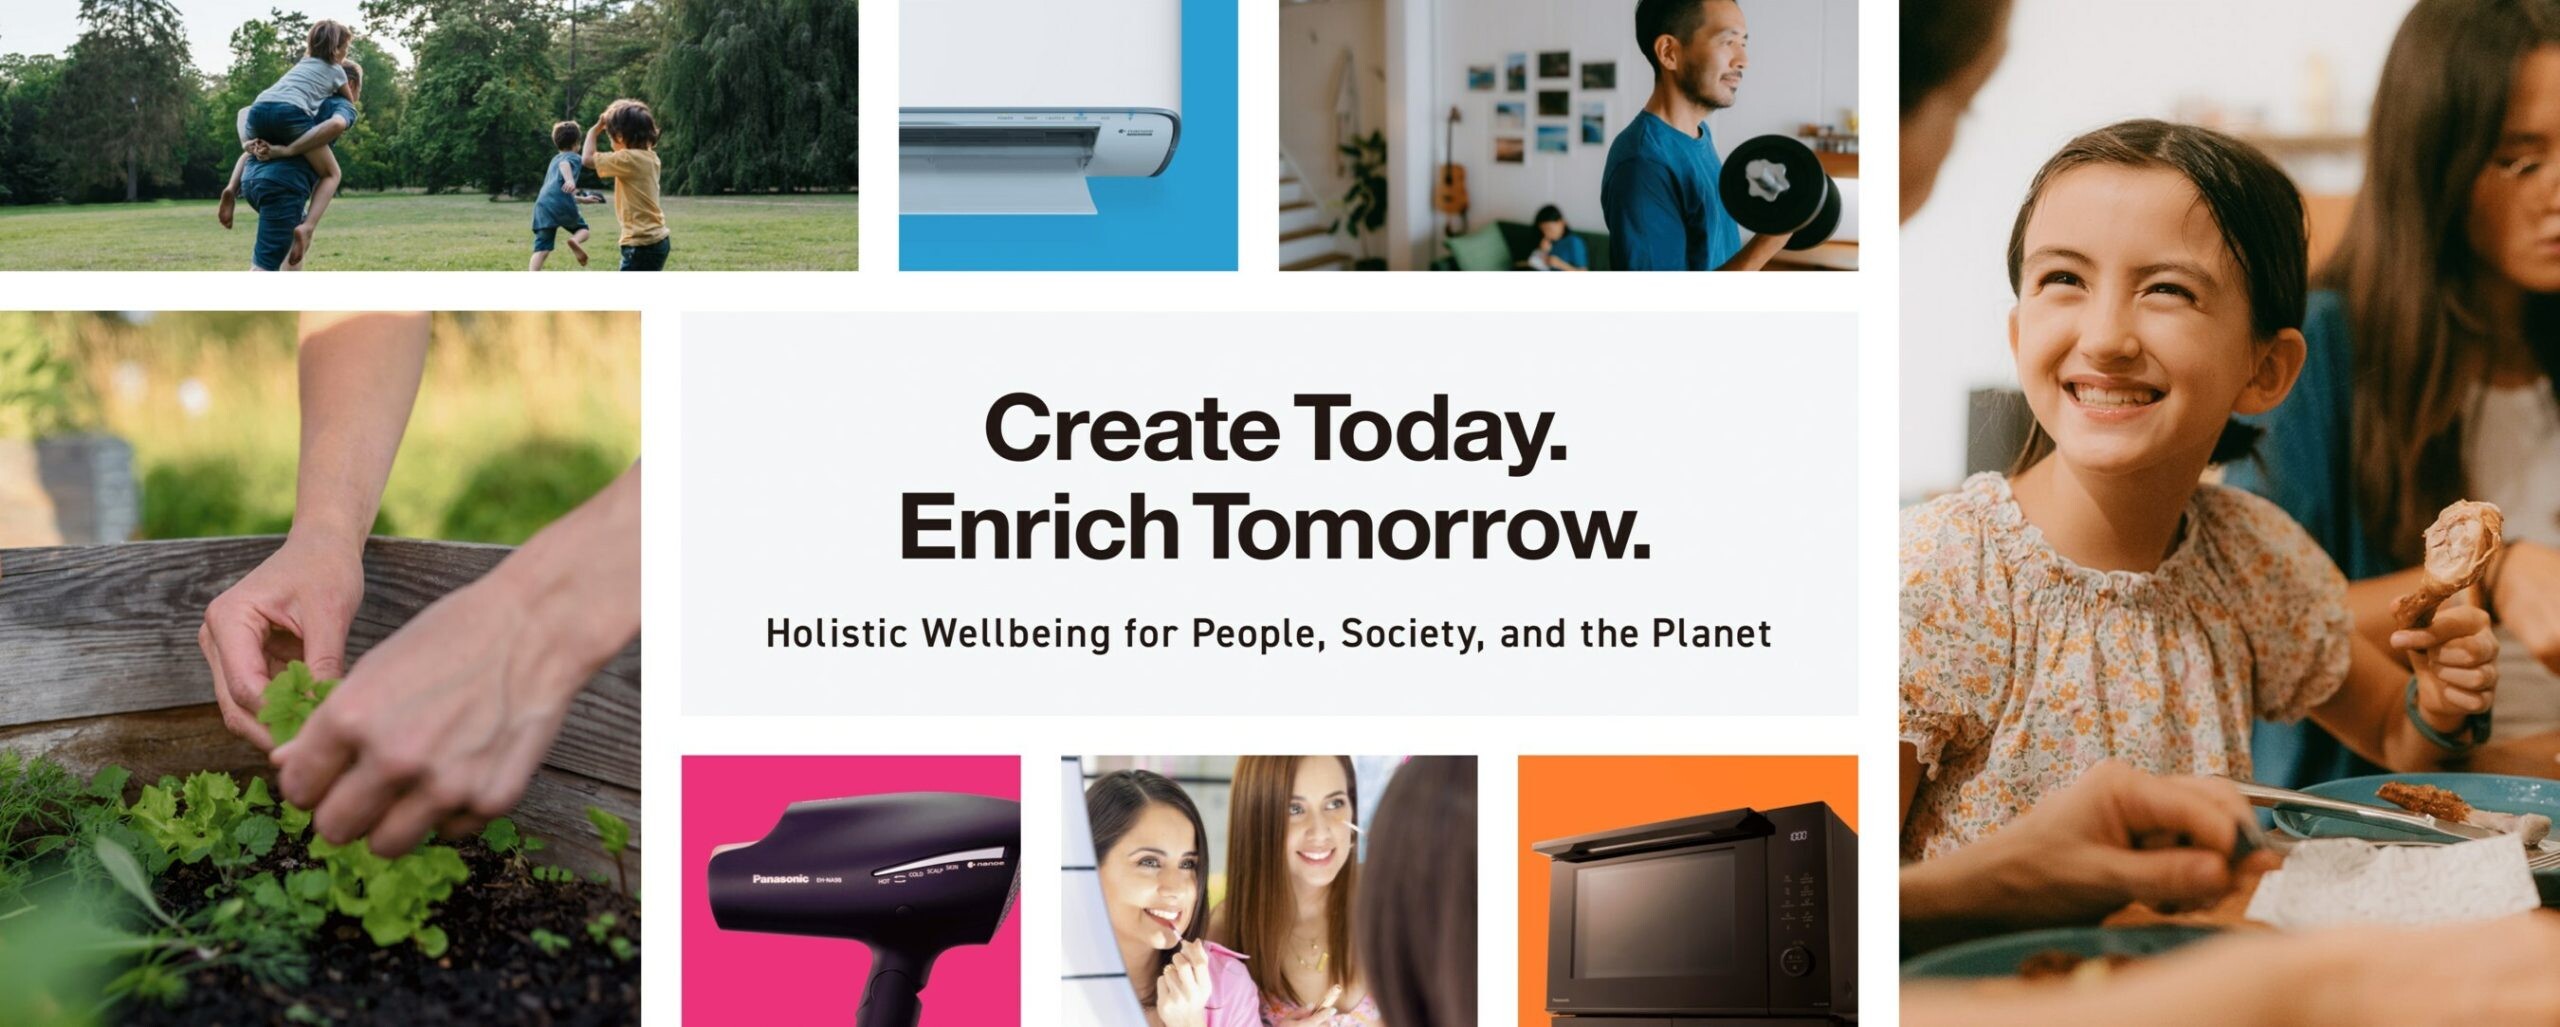 พานาโซนิค คอร์ปอร์เรชั่น มุ่งมั่นส่งเสริมสุขภาพที่ดีแบบองค์รวม เปิดตัวแท็กไลน์ใหม่ "สร้างสรรค์ในวันนี้ เพื่อคุณภาพชีวิตที่ดีในวันหน้า" (Create Today. Enrich Tomorrow.)